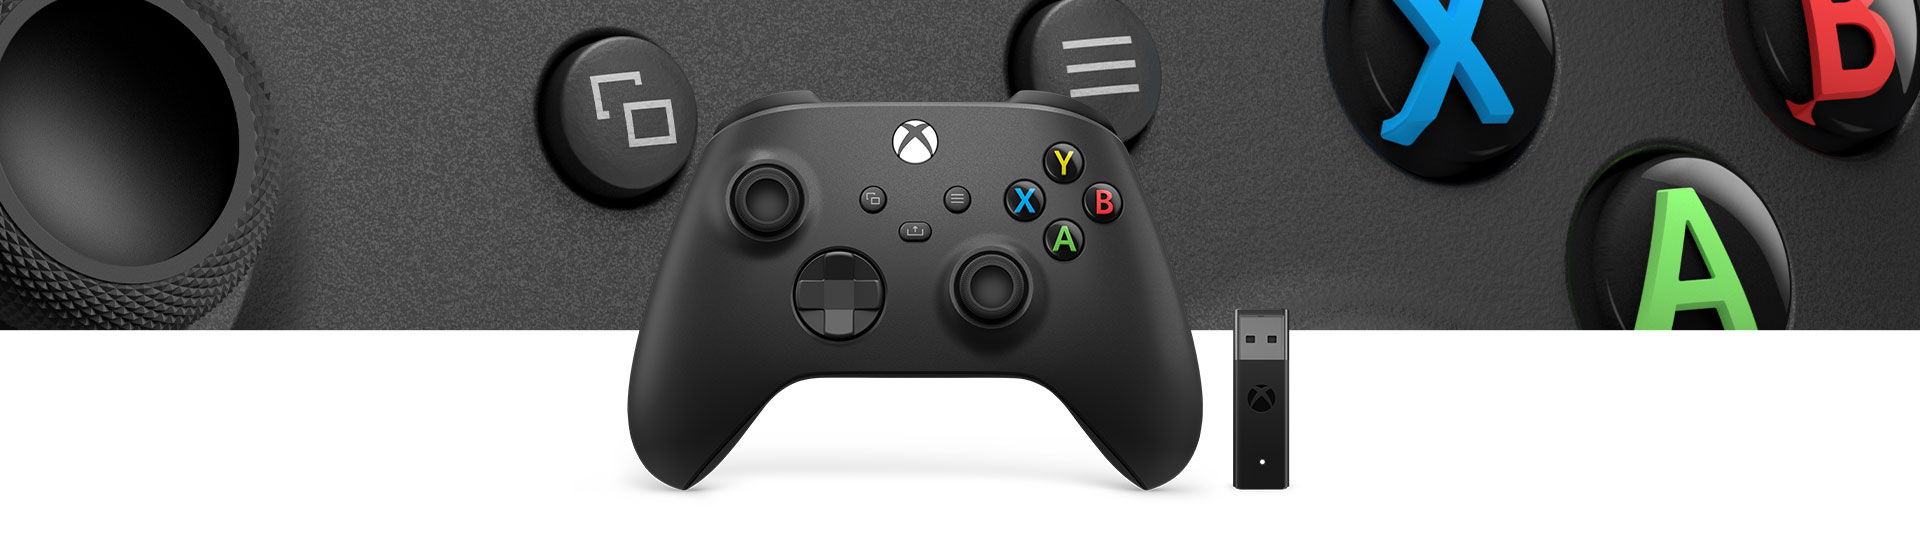 Controller Wireless per Xbox + Adattatore Wireless per Windows 10, in primo piano la superficie del controller